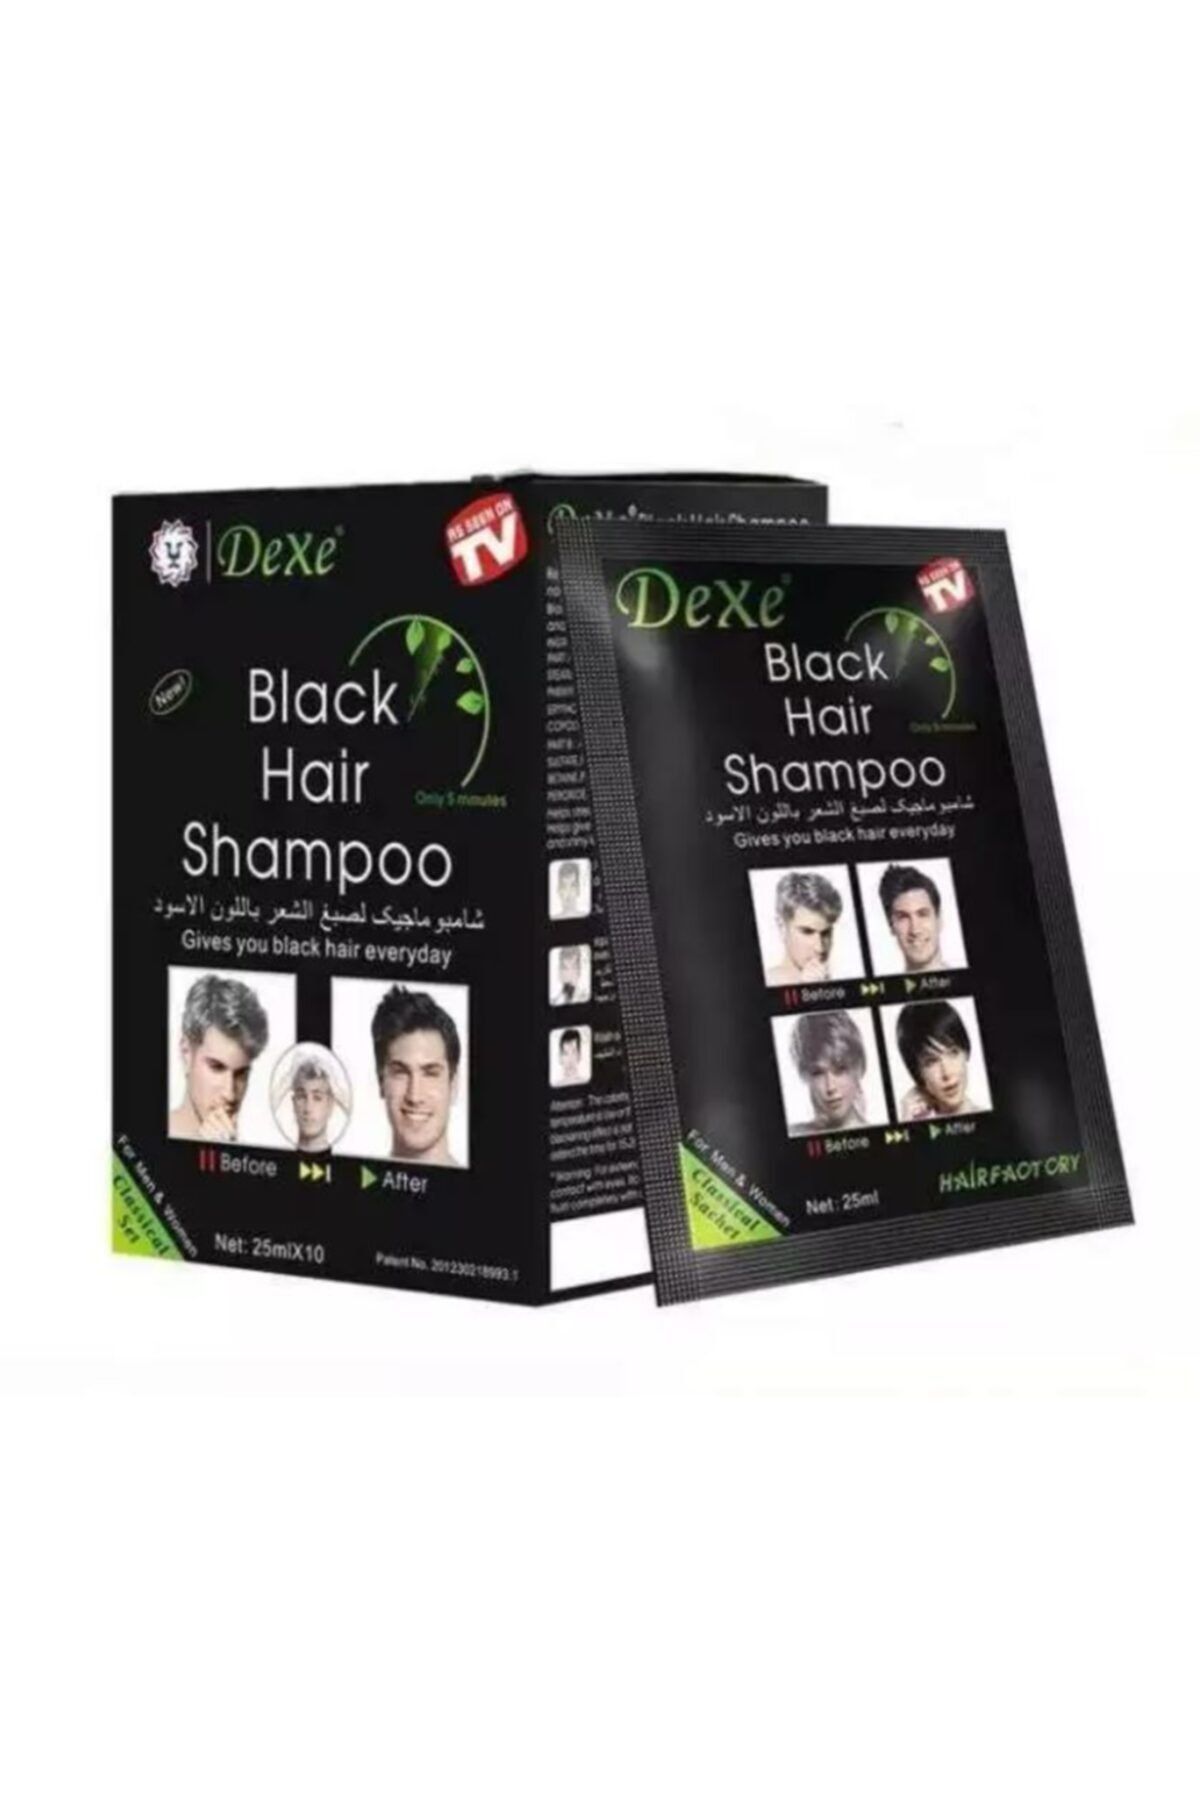 Dexe Beyaz Saç Giderici Şampuan (black Hair Shampoo) 10x25ml